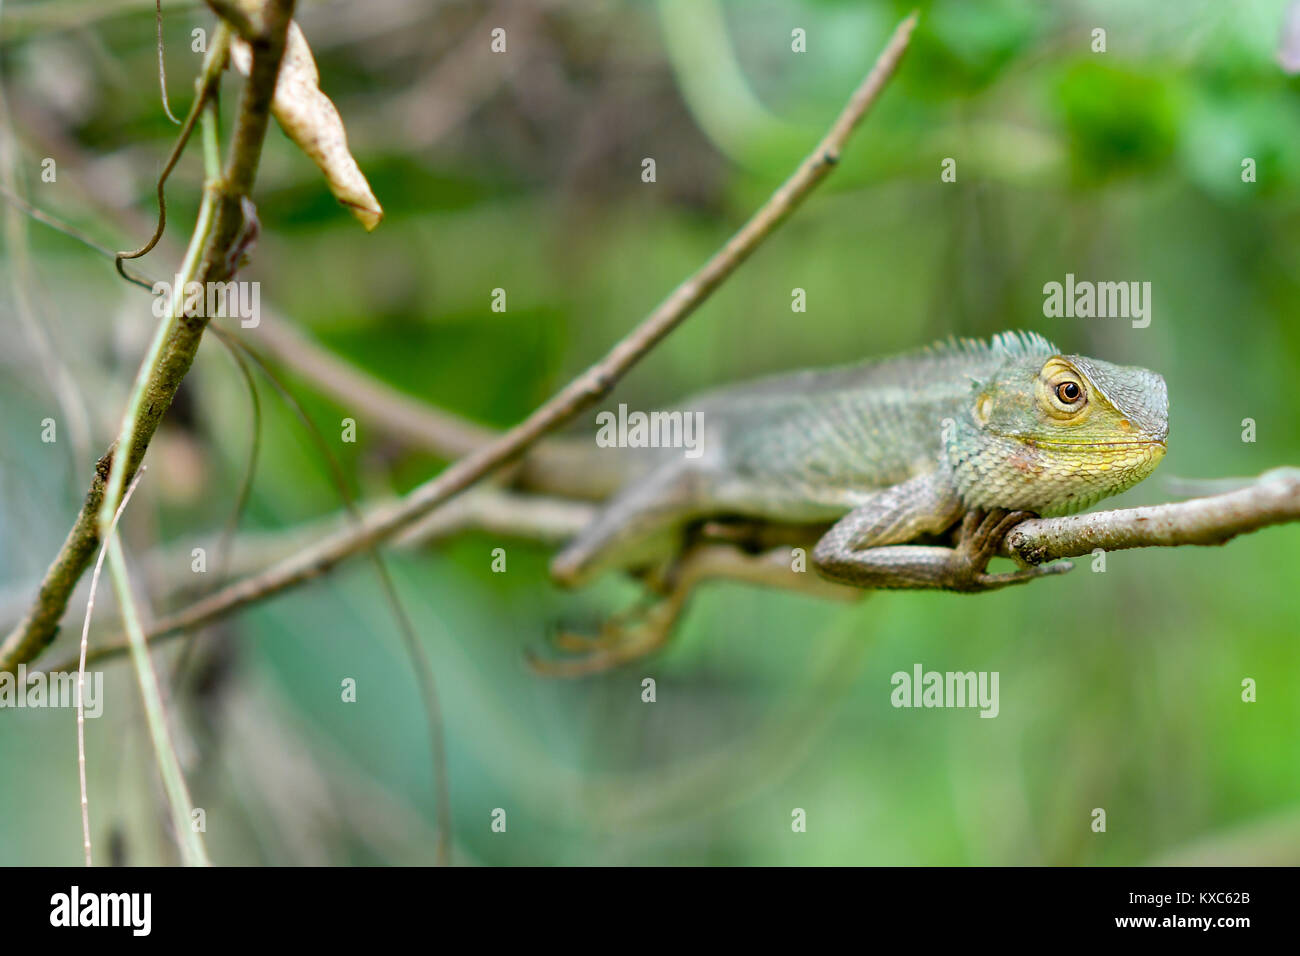 Chameleon ruhen Stockfoto